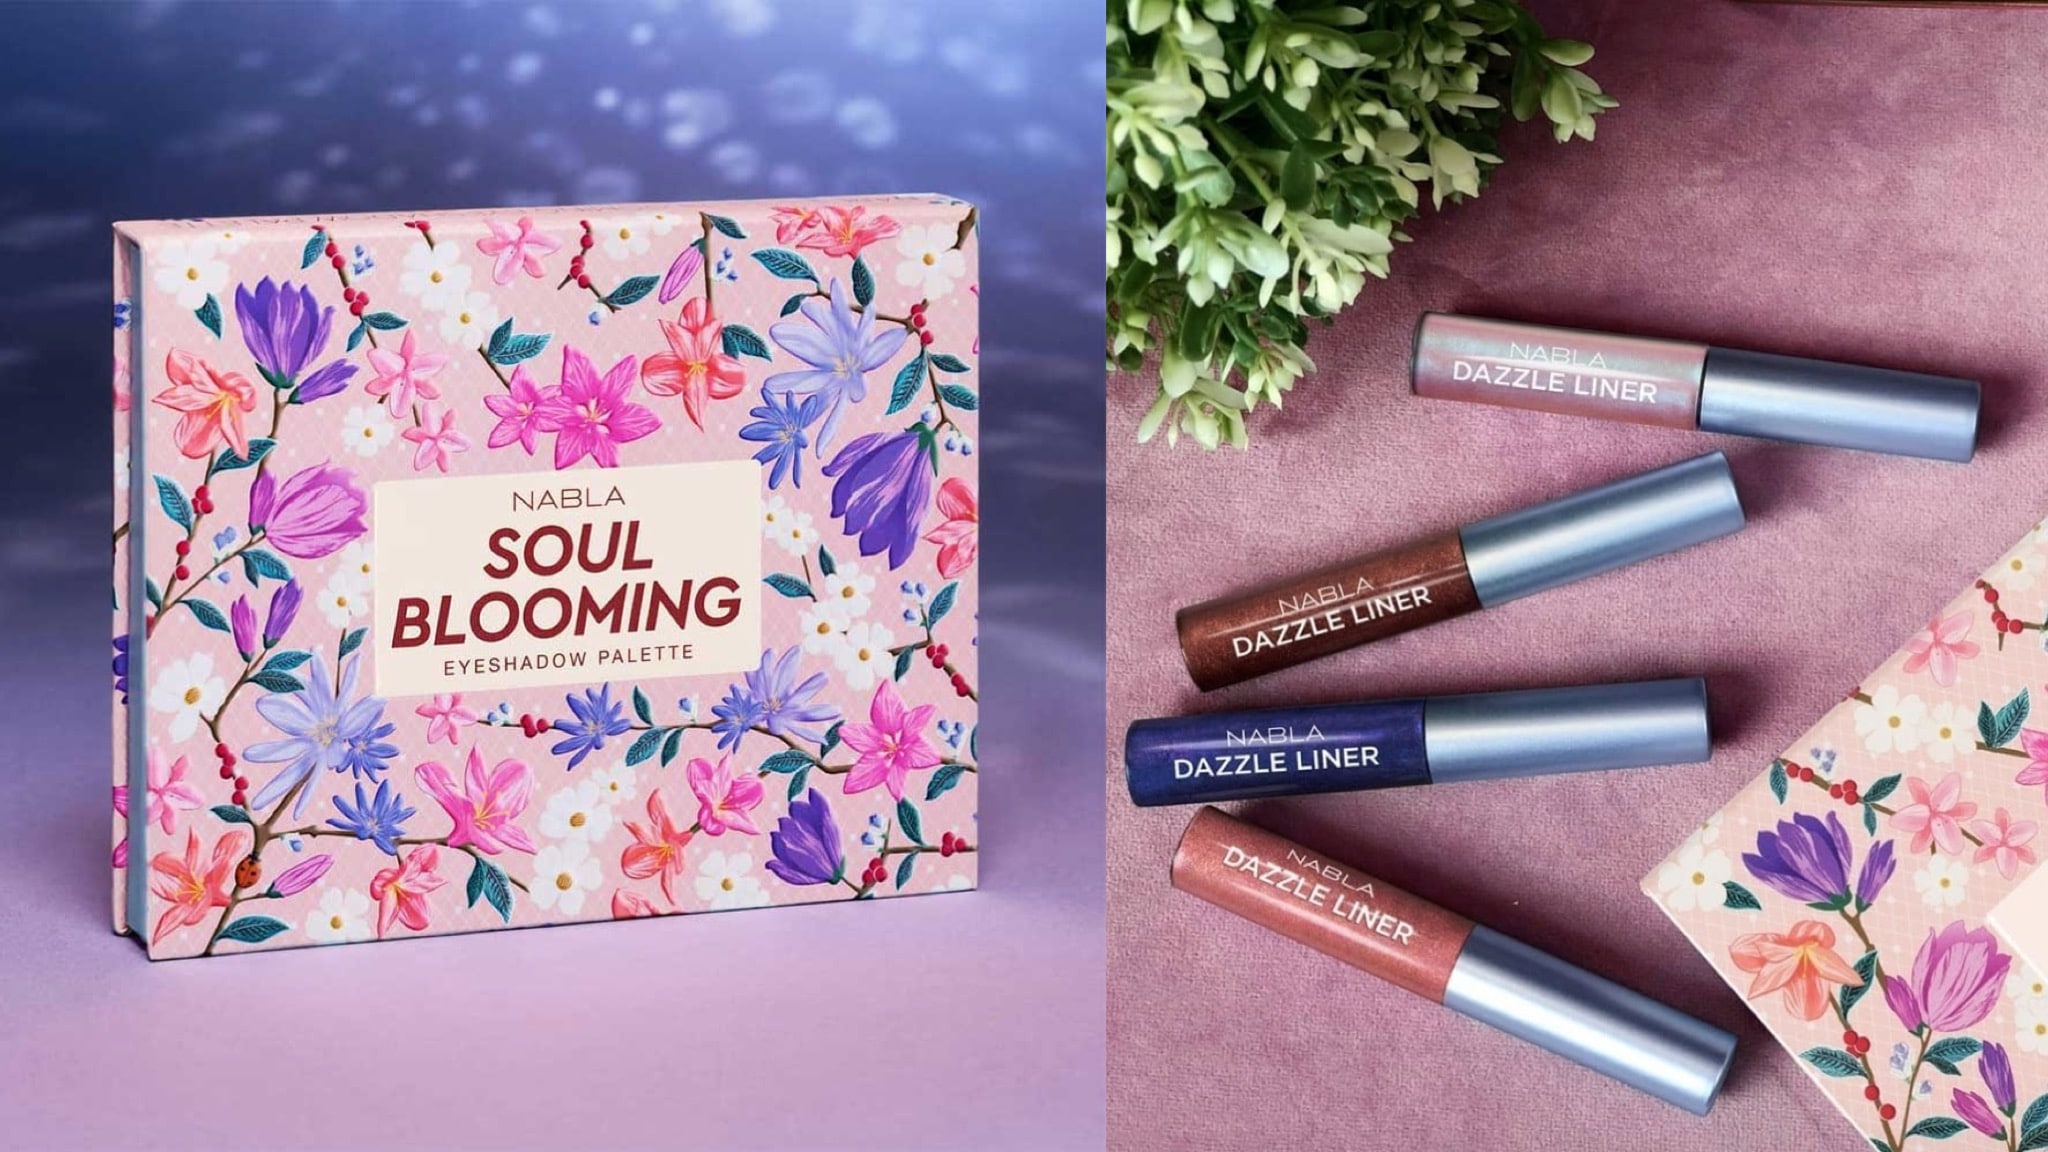 Soul Blooming, la nuova collezione primavera 2018 firmata NABLA Cosmetics: anteprima, foto, swatch, prezzo, dove acquistare, data di uscita, info